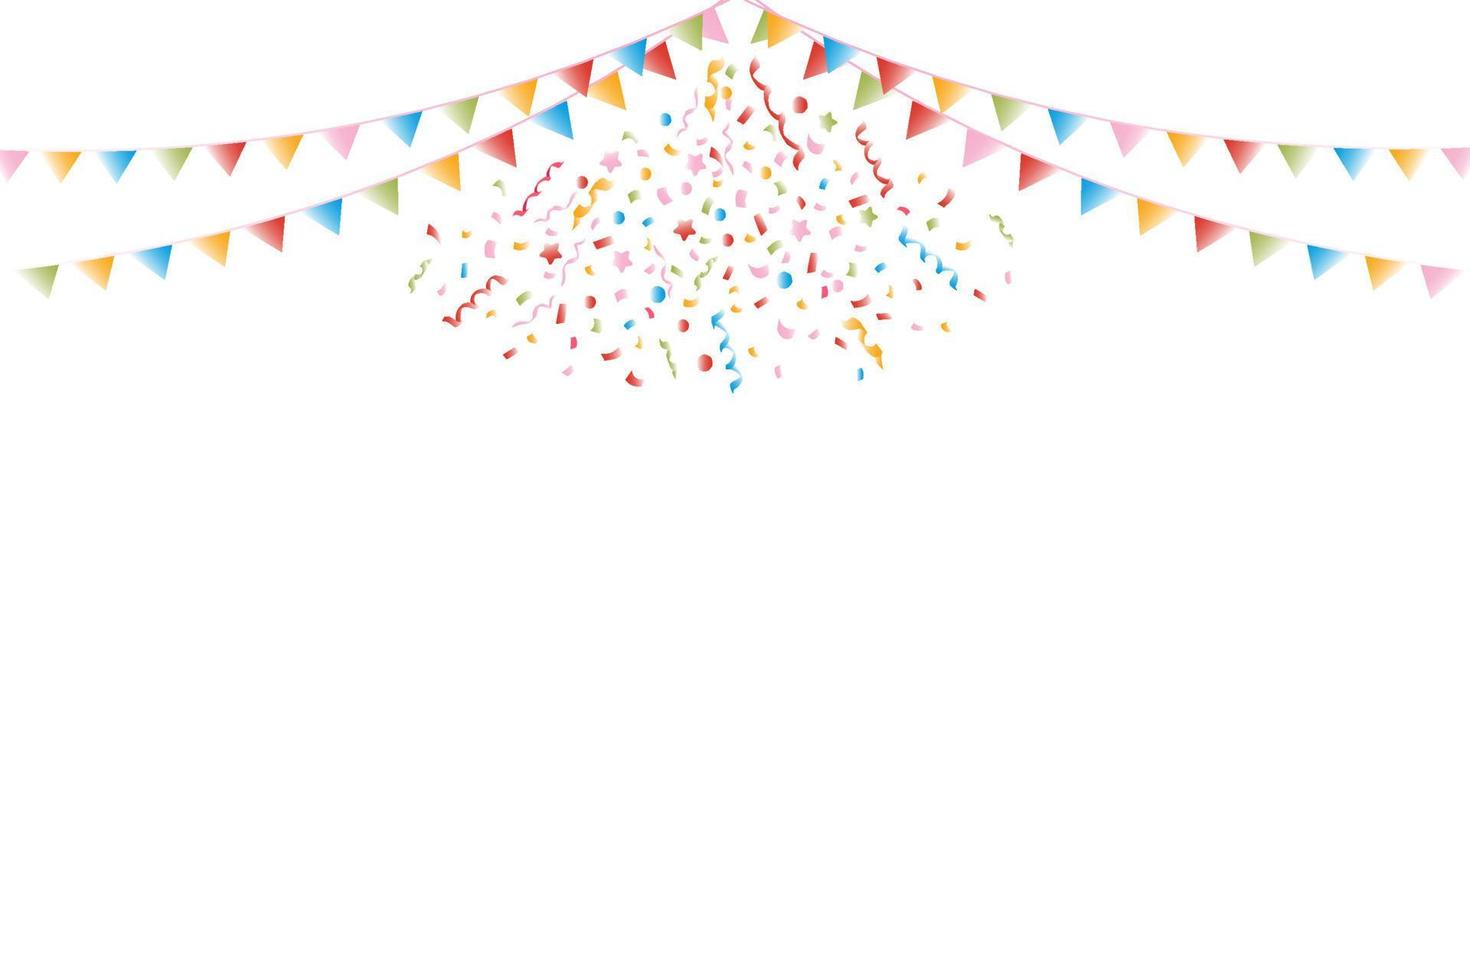 färgrik konfetti explosion på en vit bakgrund med flerfärgad flaggor, festlig mönster. vektor